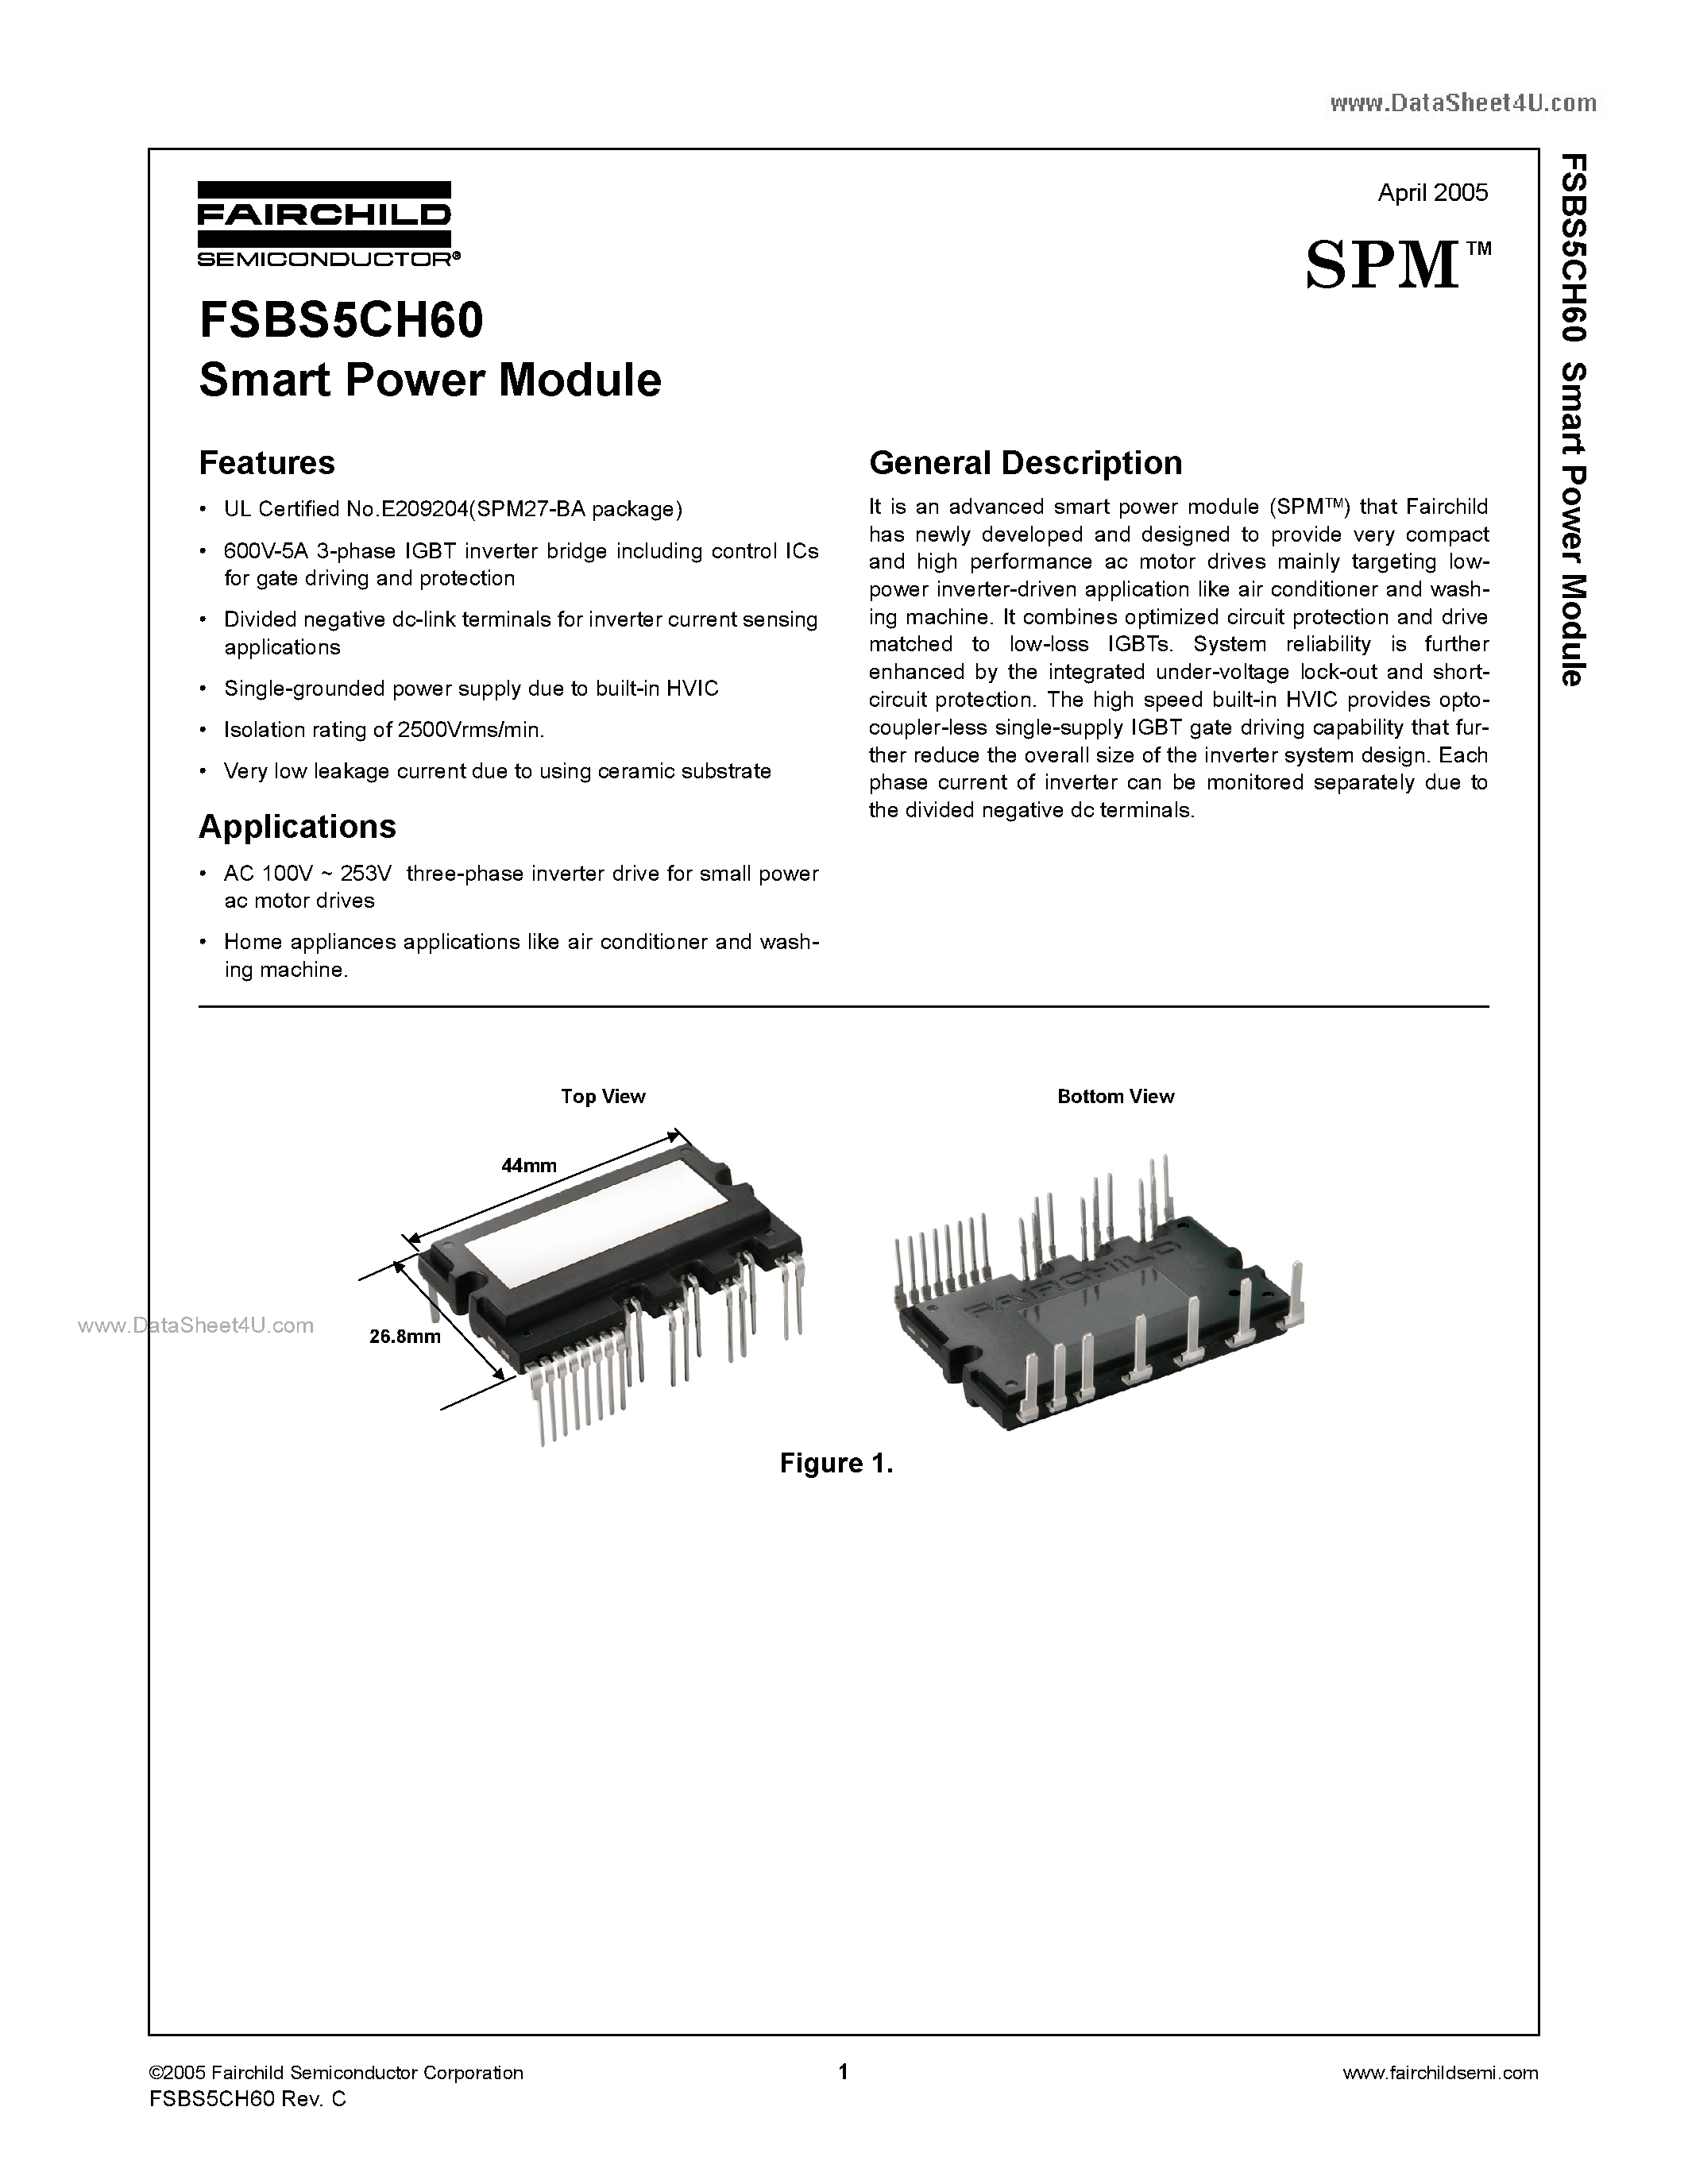 Даташит FSBS5CH60 - Smart Power Module страница 1